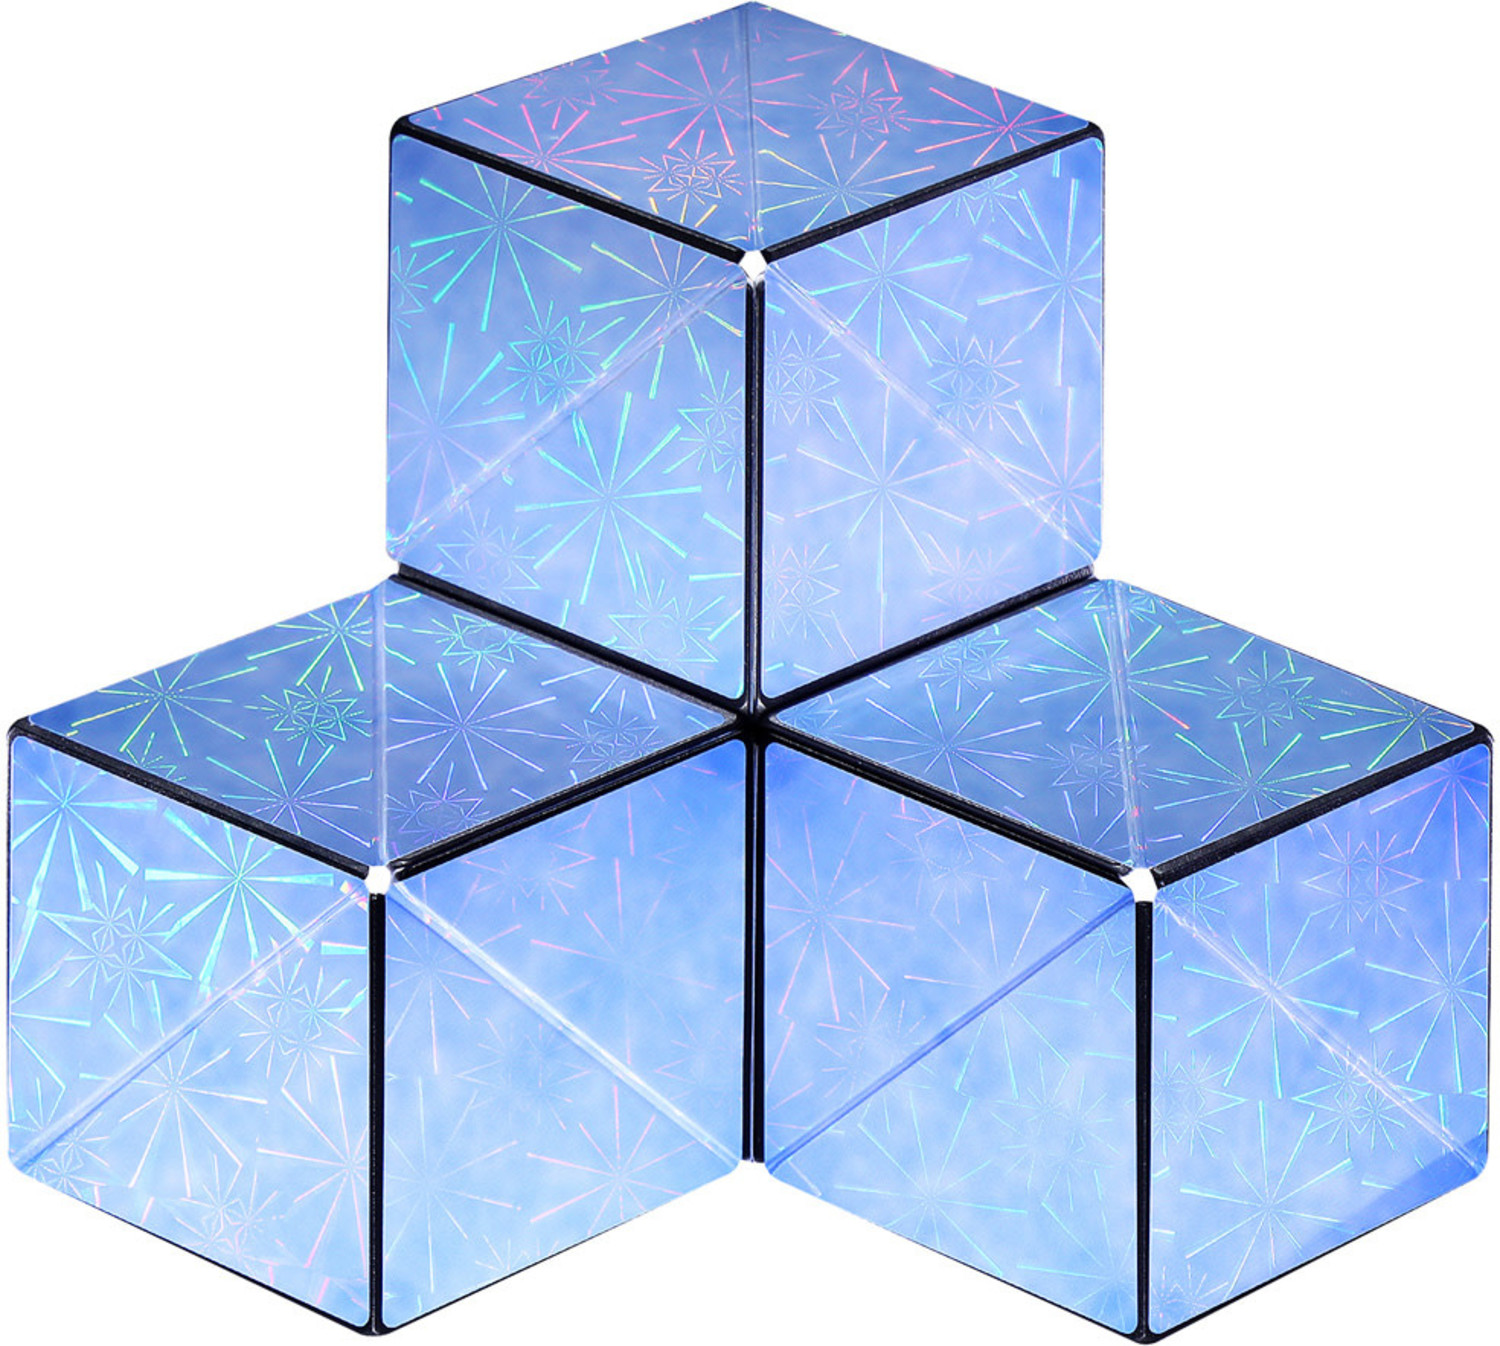 Shashibo Cube On Sale